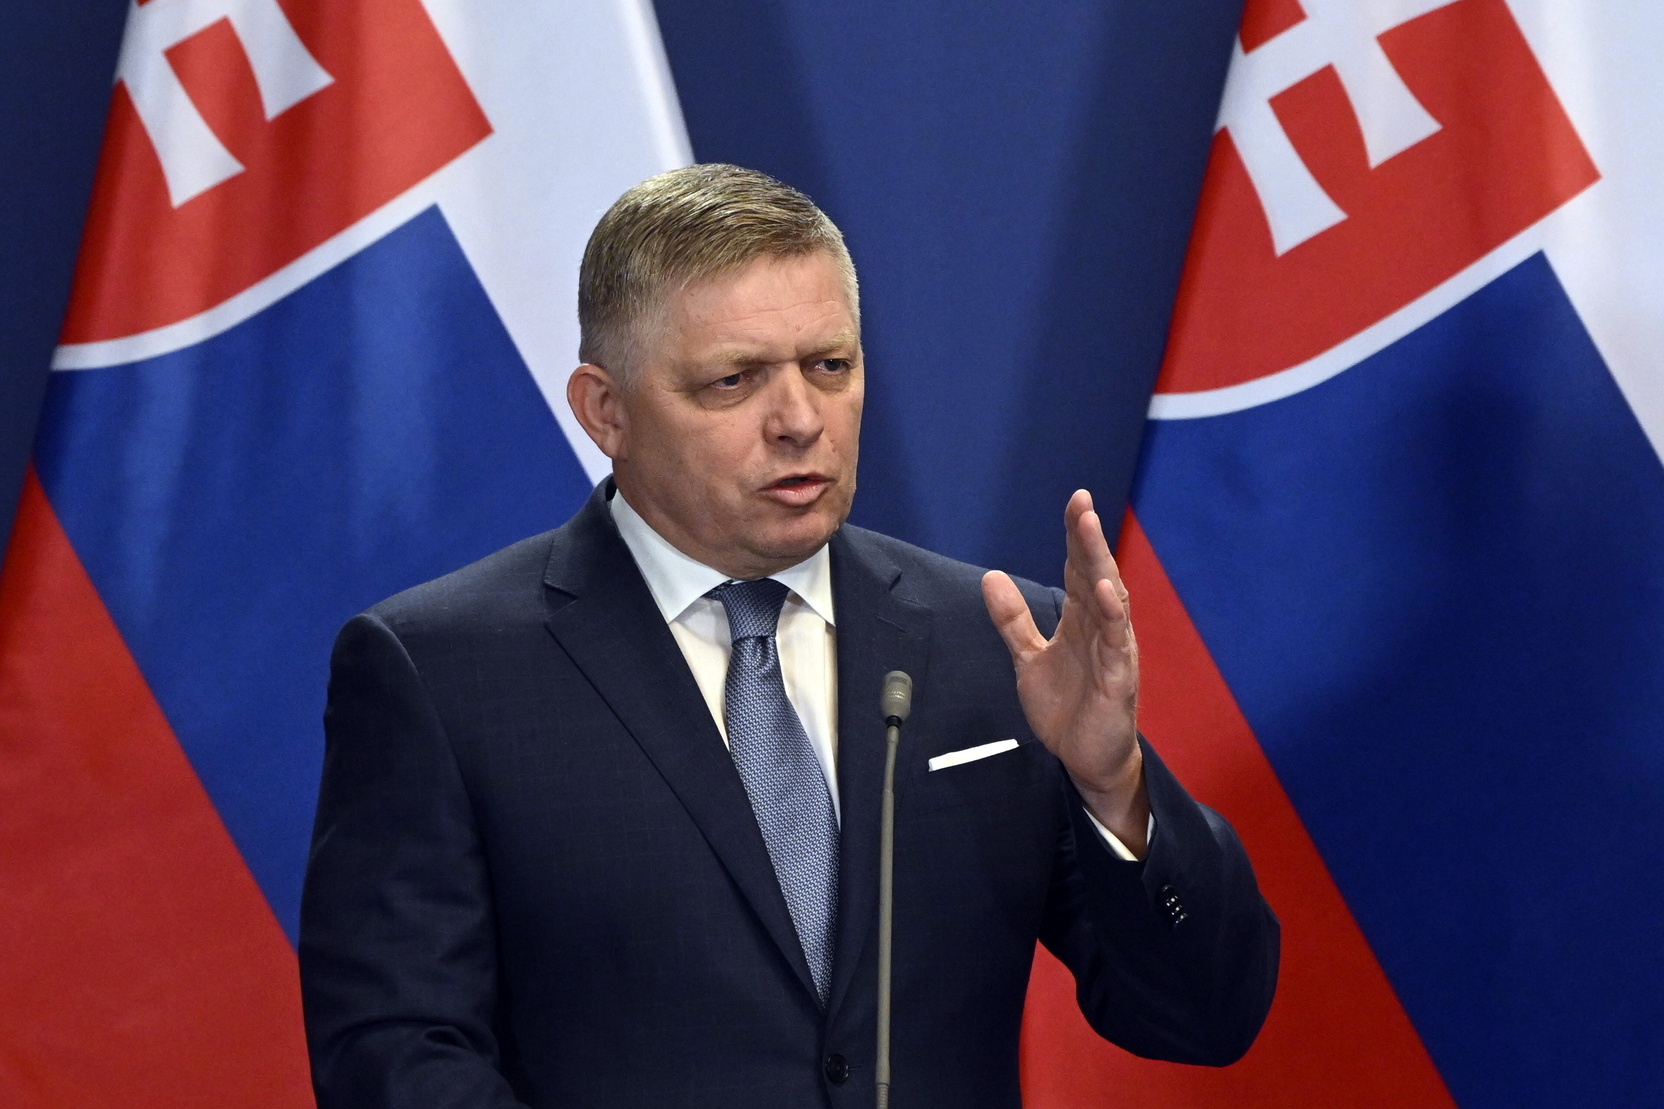 Состояние раненого премьер-министра Словакии назвали критическим